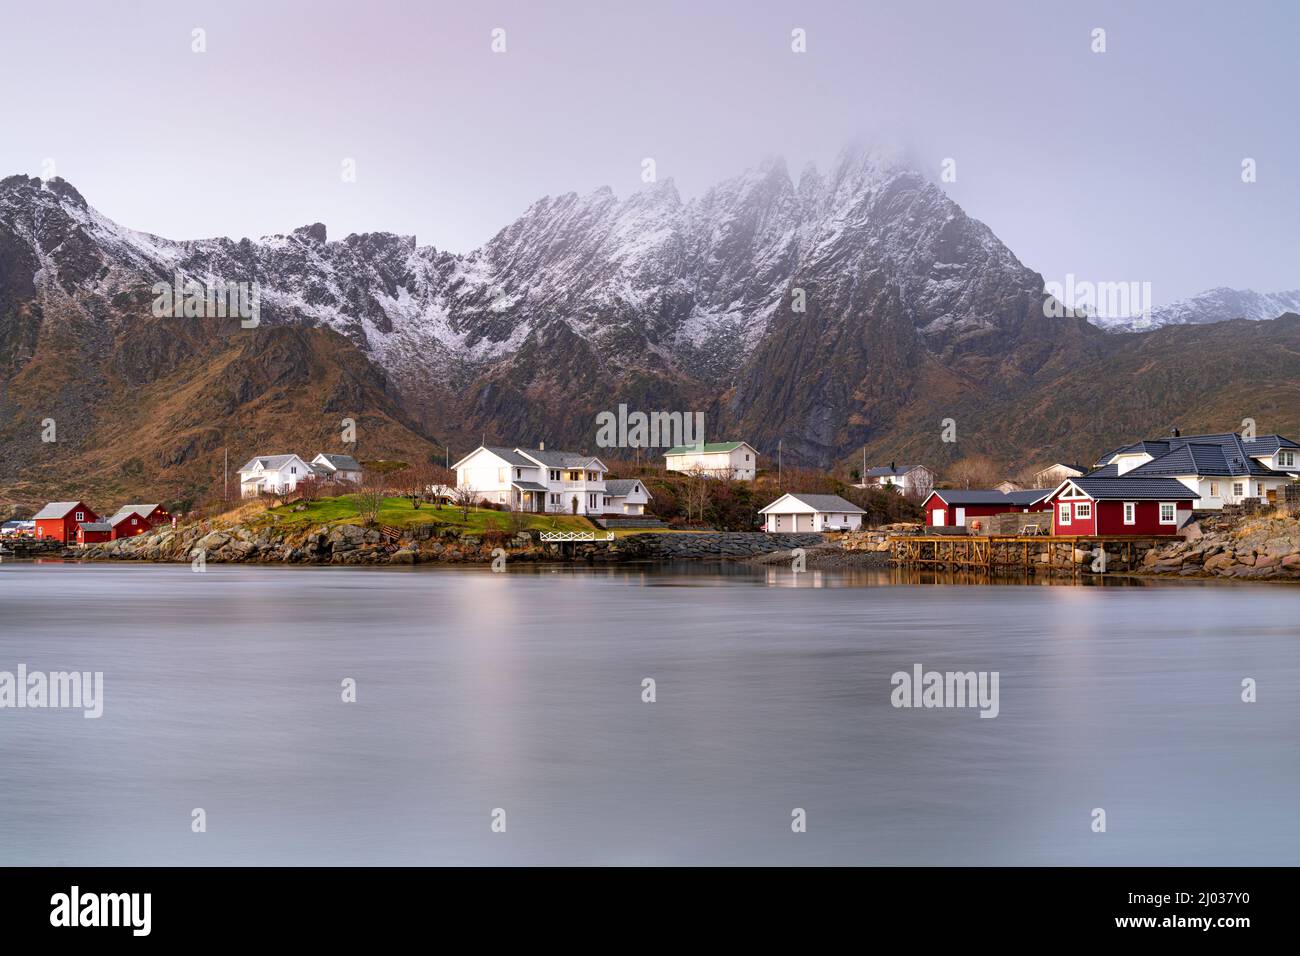 Villaggio di pescatori di Ballstad, Vestvagoy, contea di Nordland, Isole Lofoten, Norvegia, Scandinavia, Europa Foto Stock